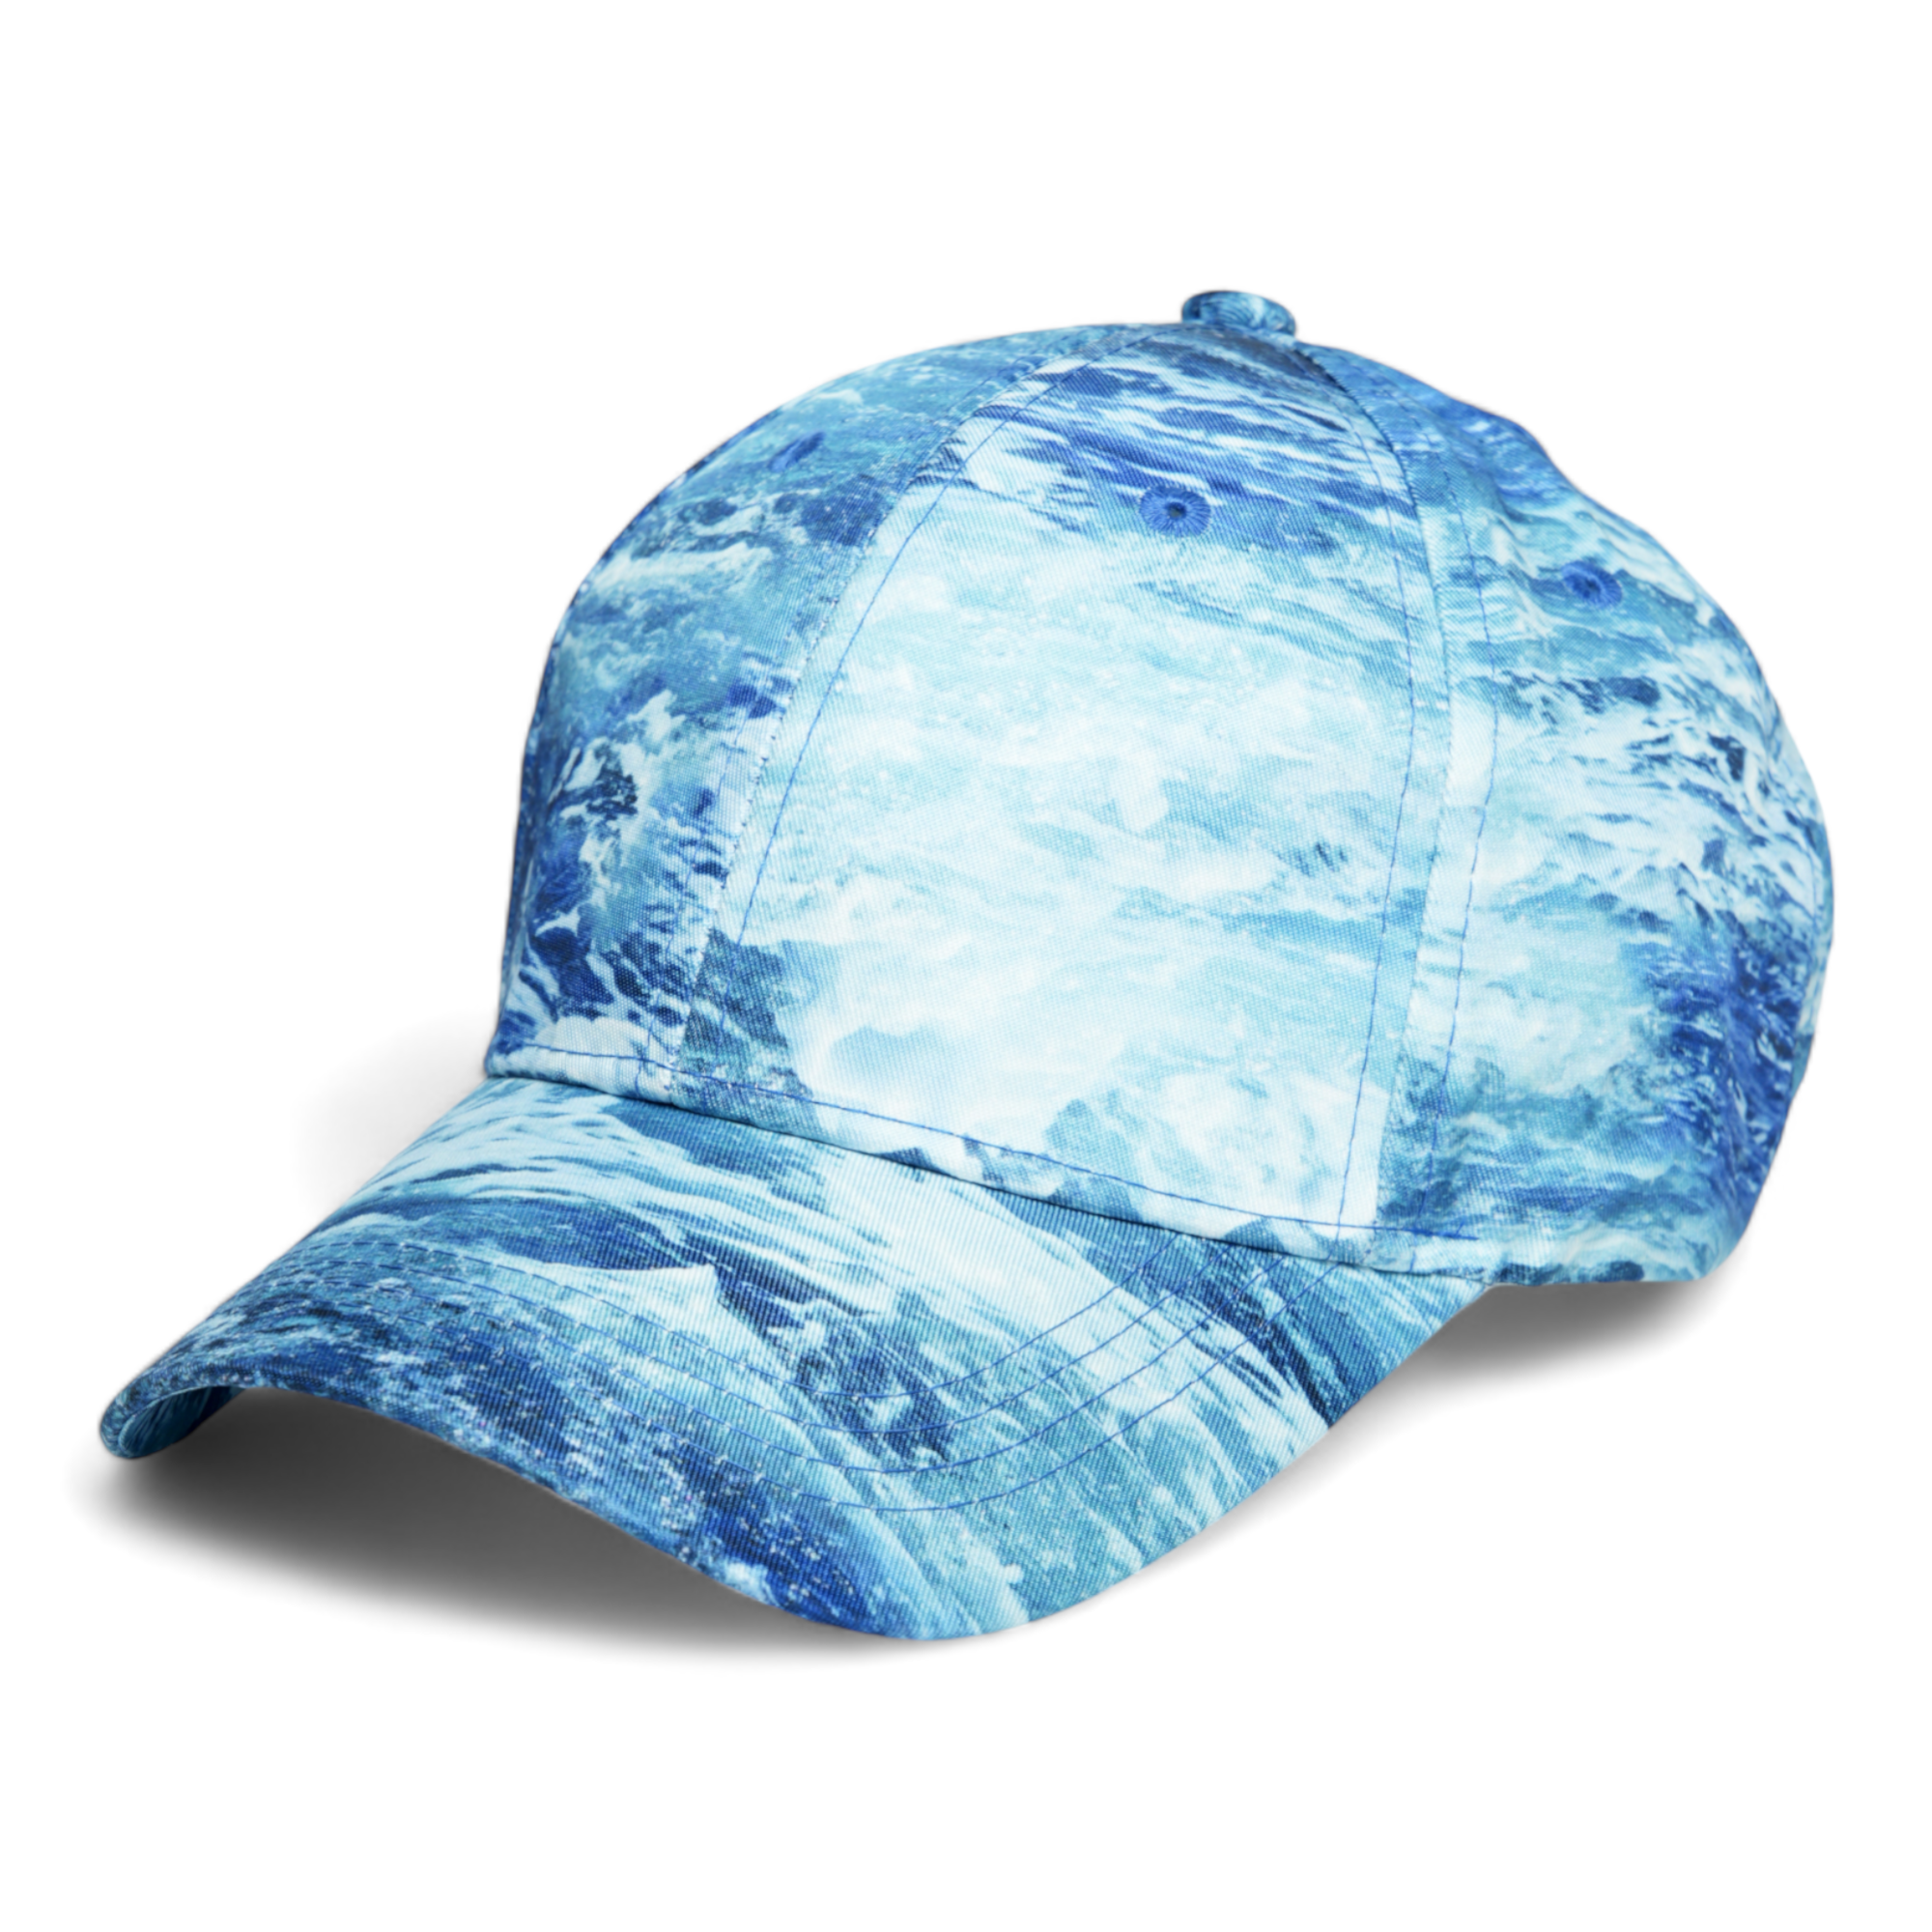 Chokore Tie-Dye Baseball Cap (Blue)